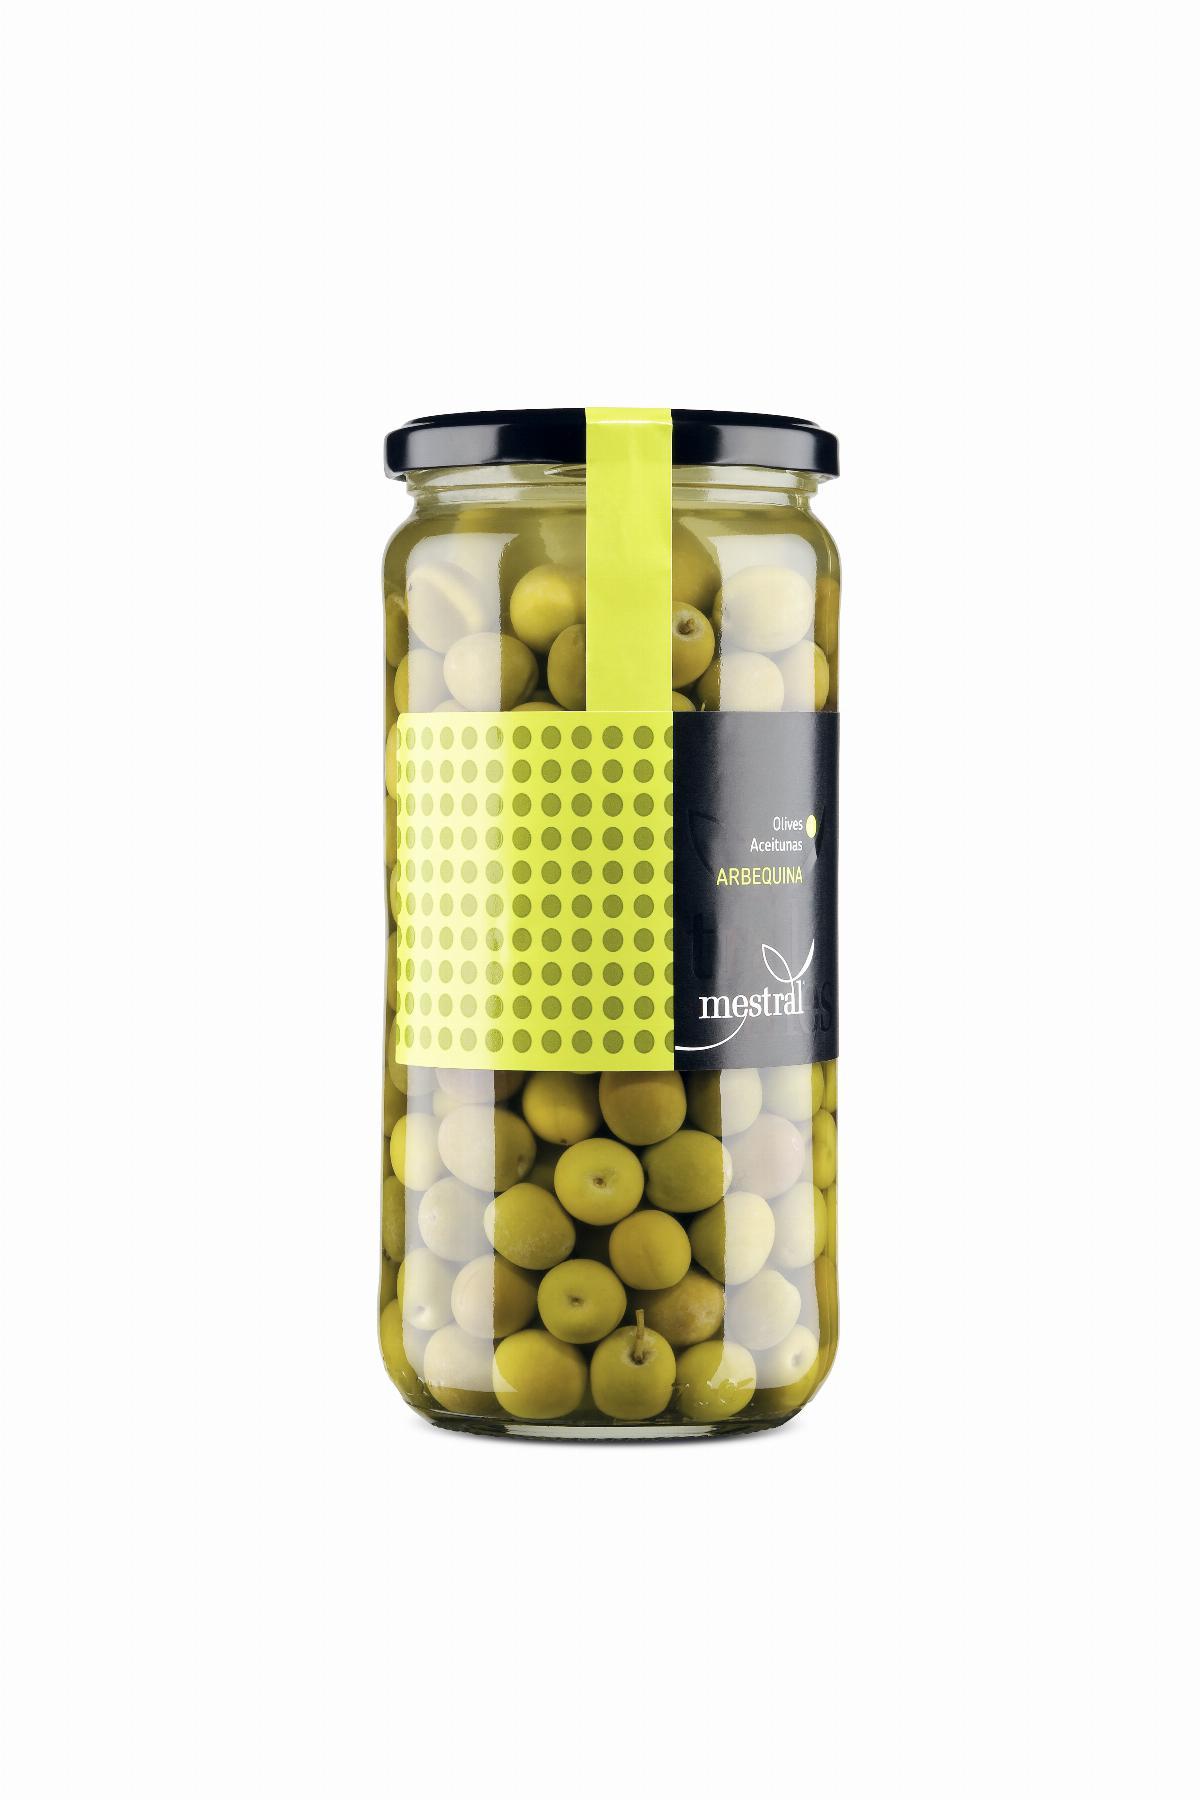 Olives - Olives Arbequines Mestral pot vidre 440g - Mestral Cambrils